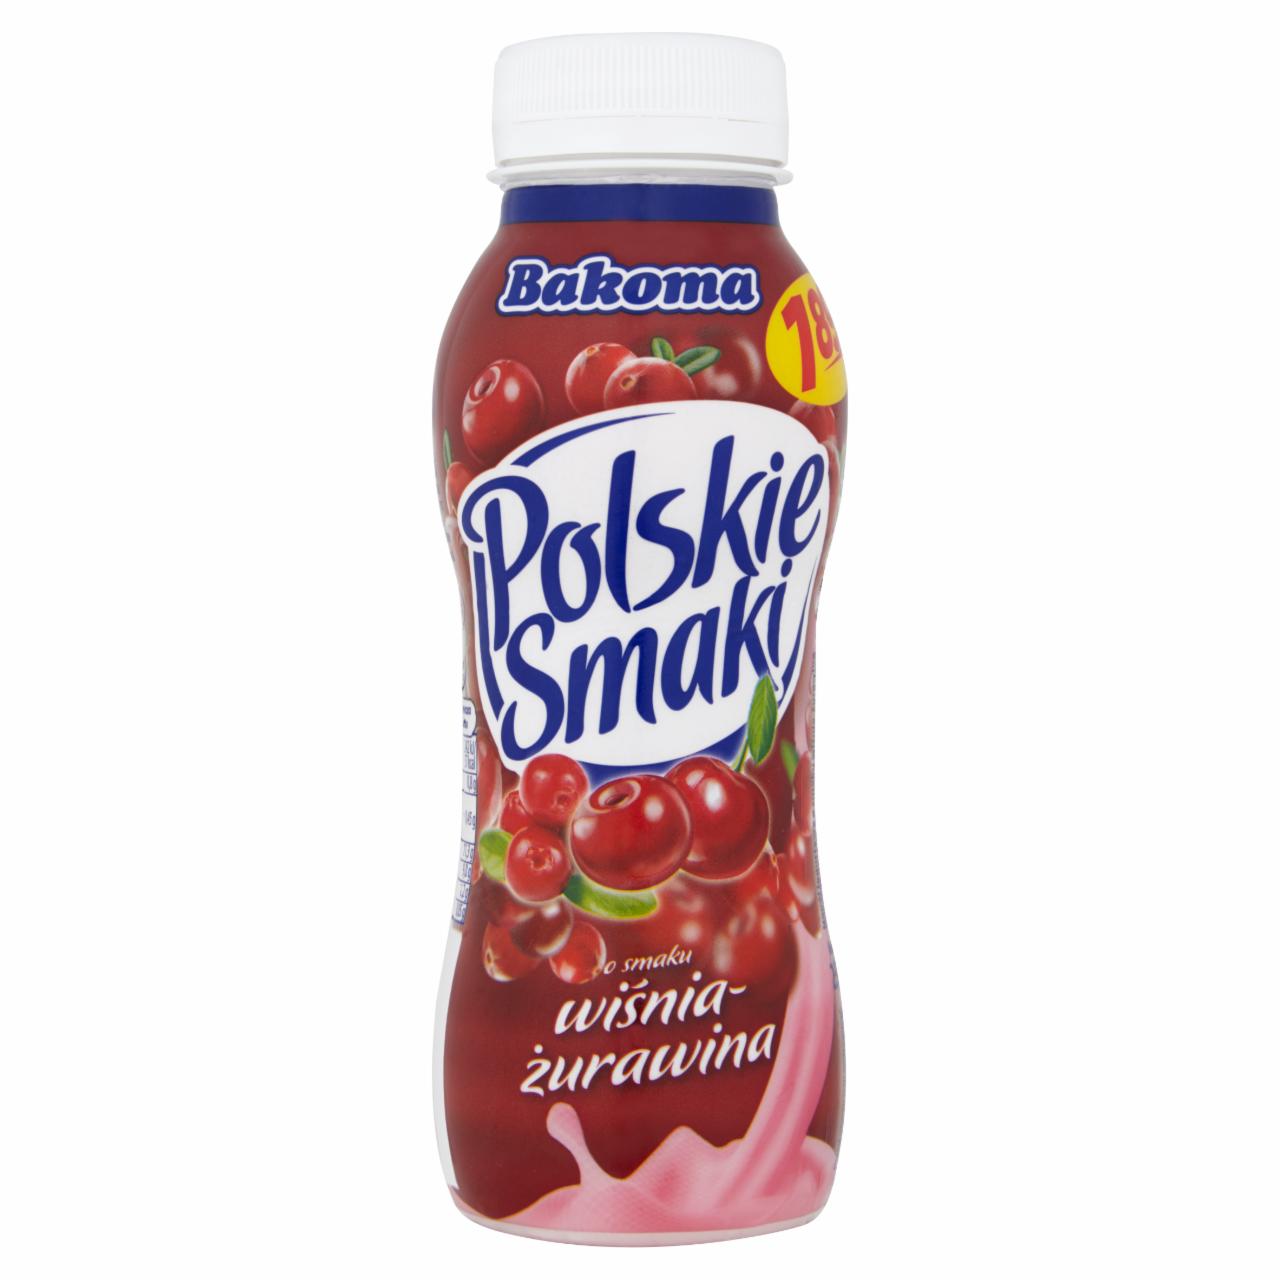 Zdjęcia - Bakoma Polskie Smaki Napój jogurtowy o smaku wiśnia-żurawina 250 g